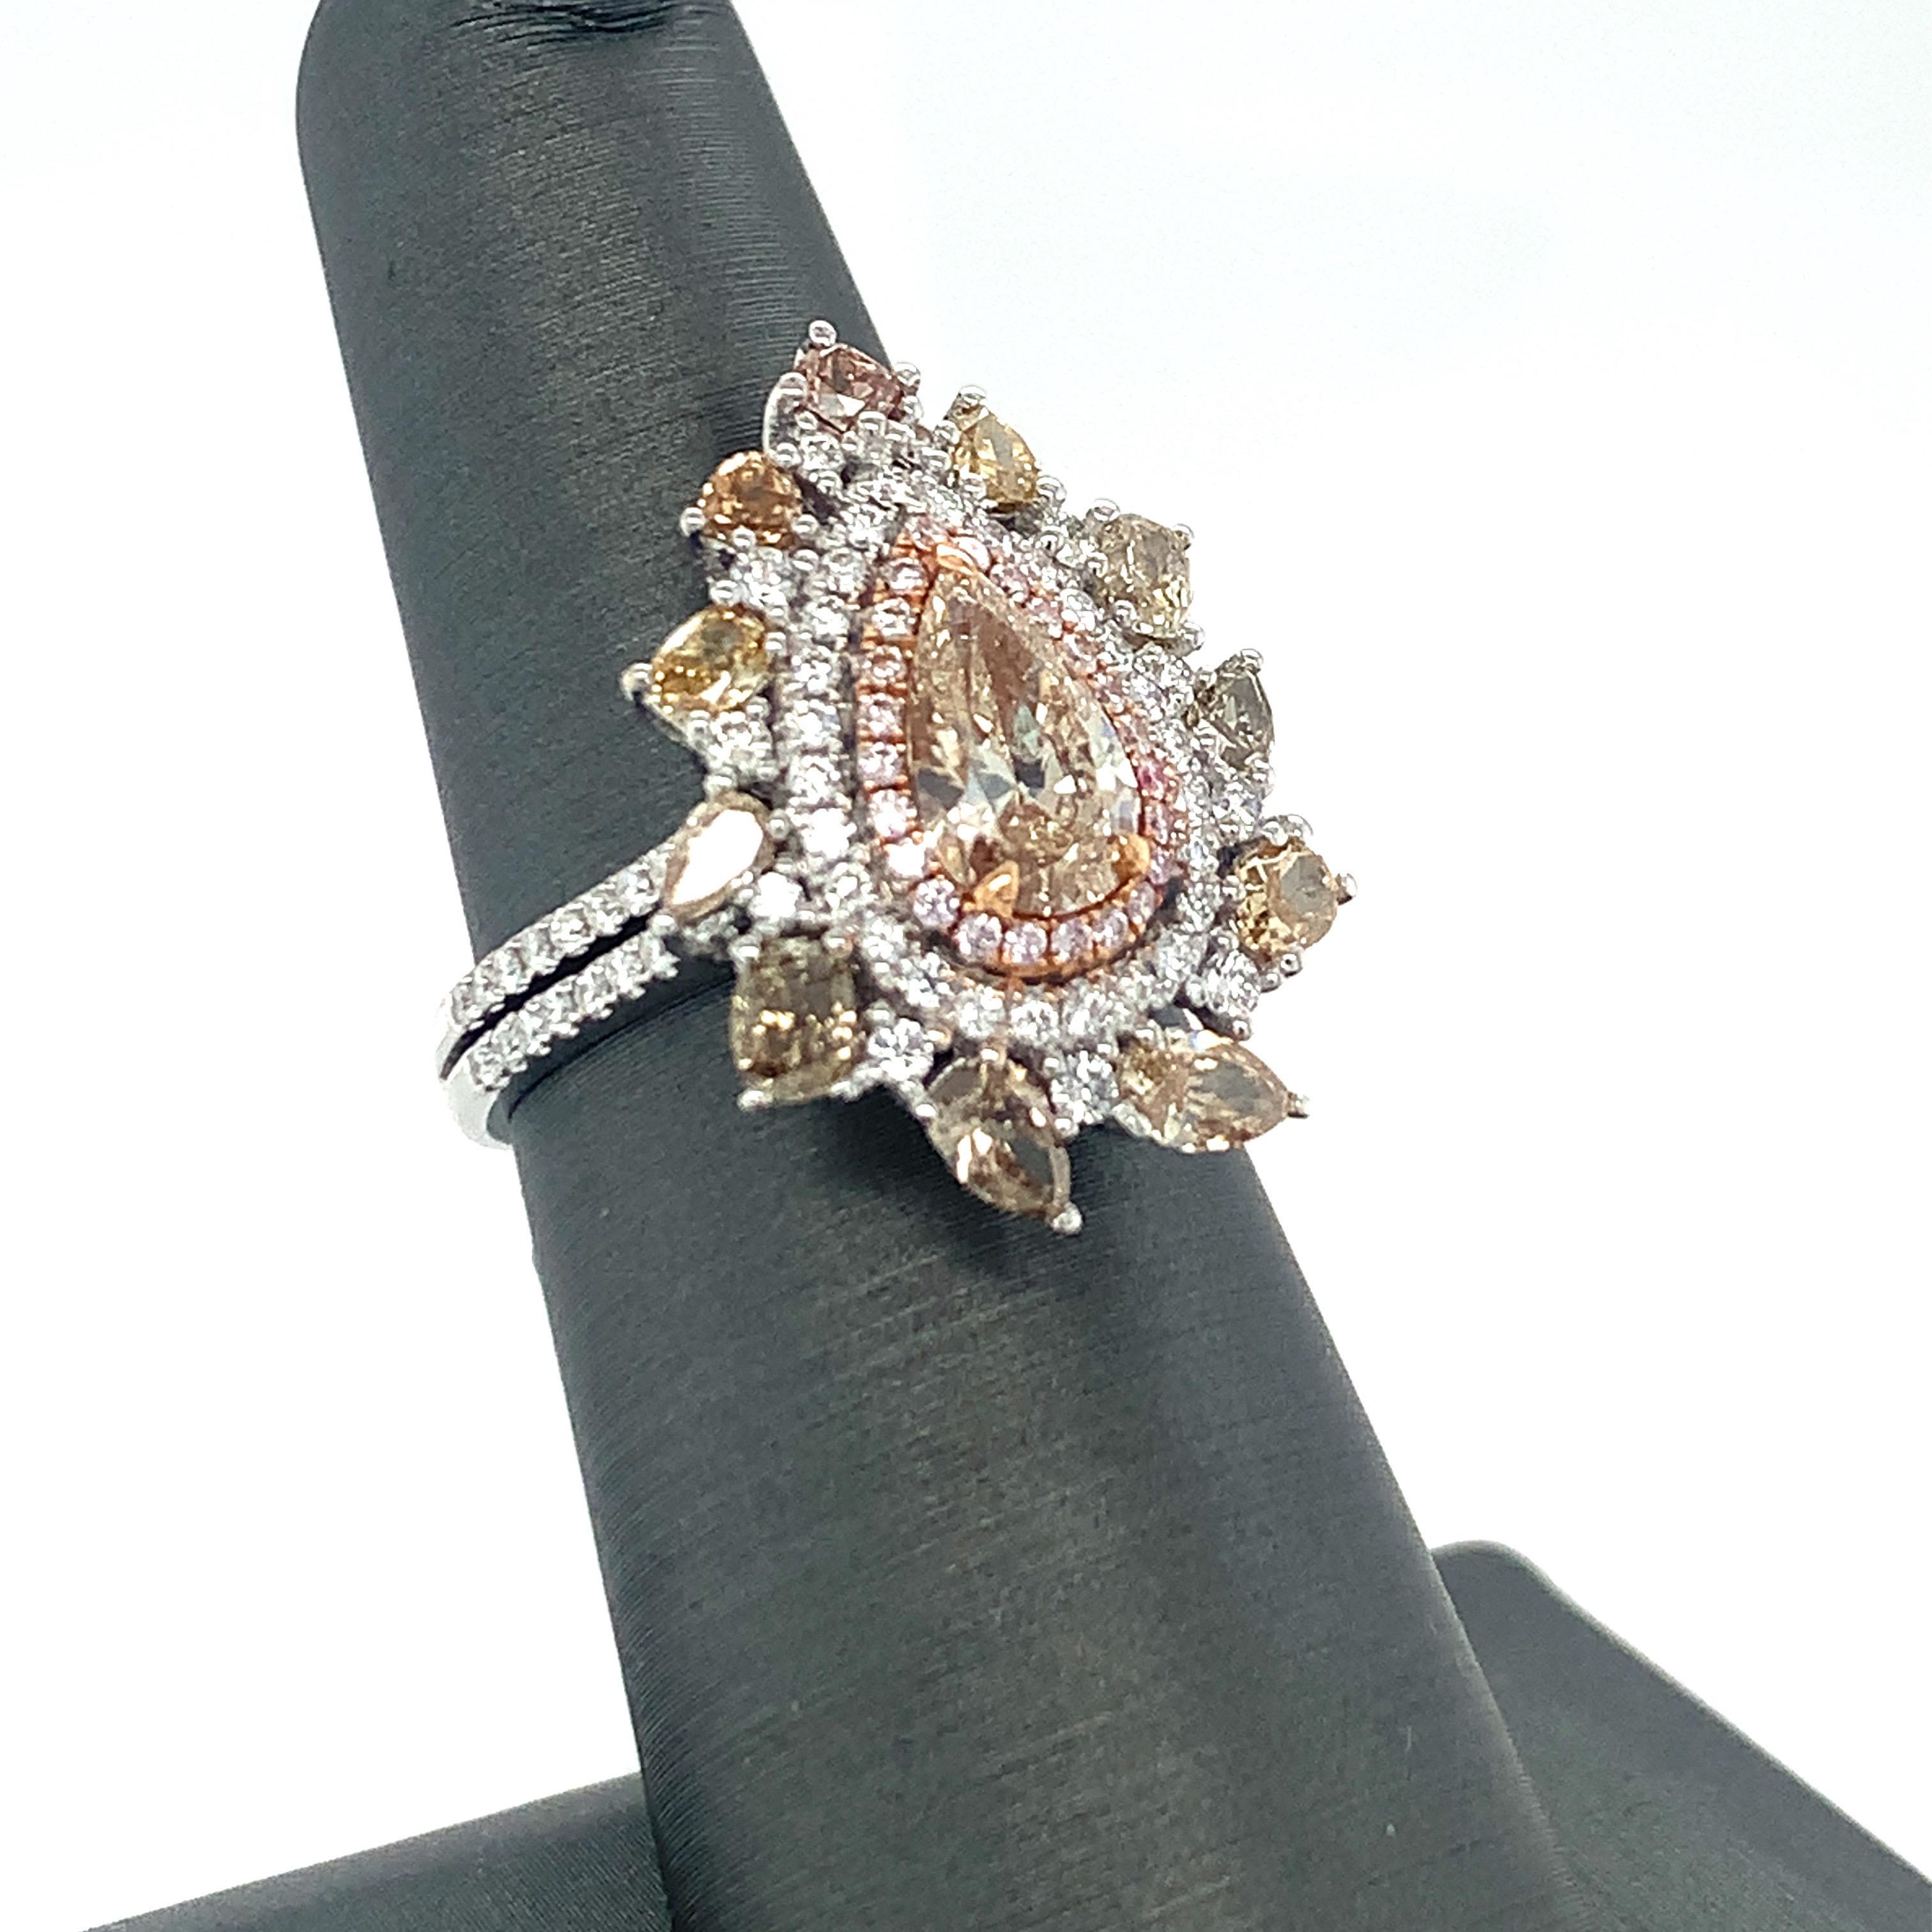 Ce diamant central champagne de forme poire est entouré d'un halo de trois couches de diamants et d'une demi-bande pavée à double ligne. La couche intérieure est rose, la couche intermédiaire est blanche et la couche extérieure est constituée de